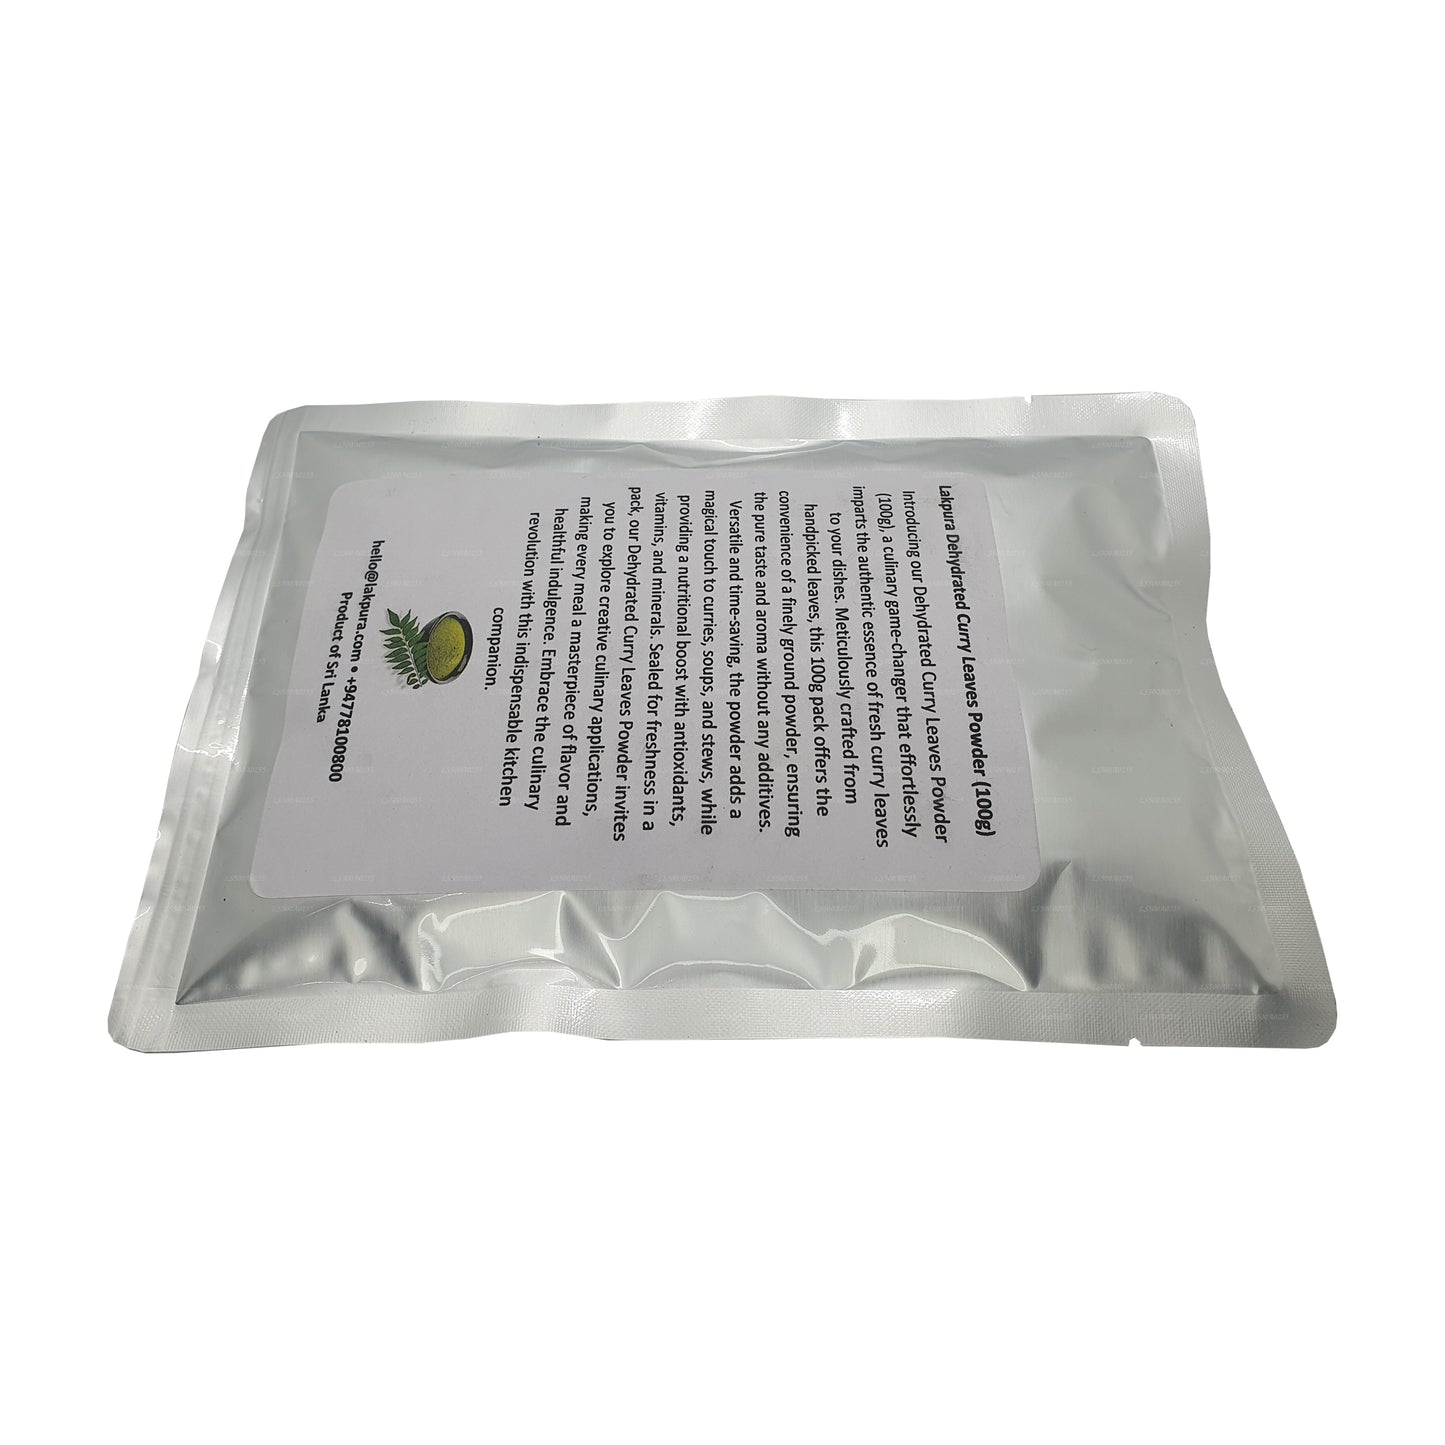 Lakpura Dehydriertes Curryblattpulver (100 g)